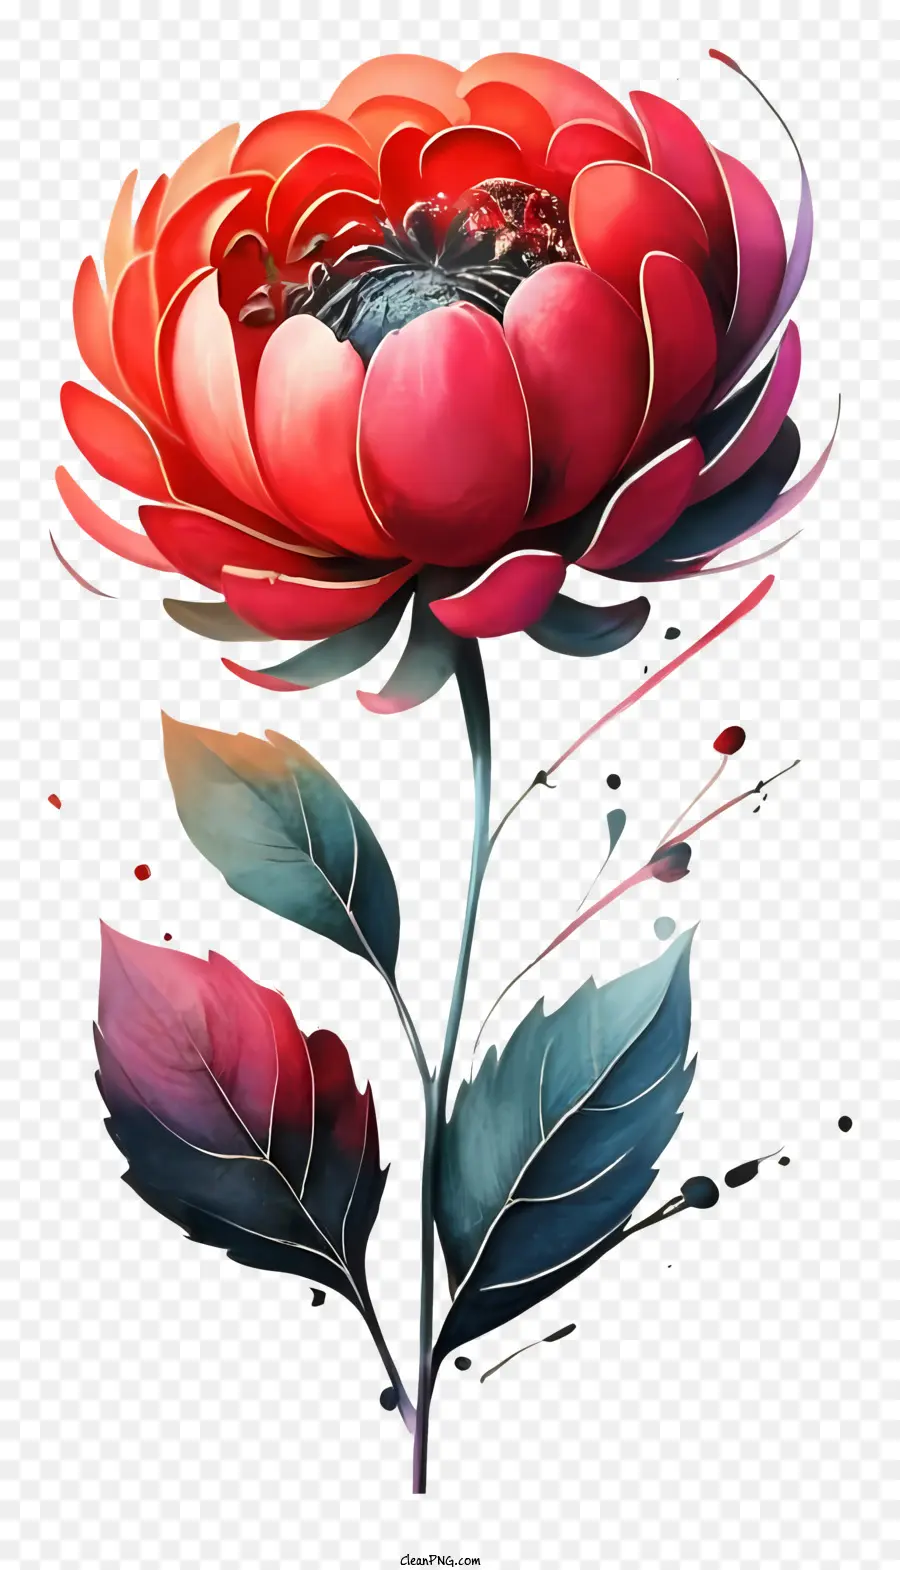 hoa đỏ - Hoa đỏ với lá dài và cánh hoa tối